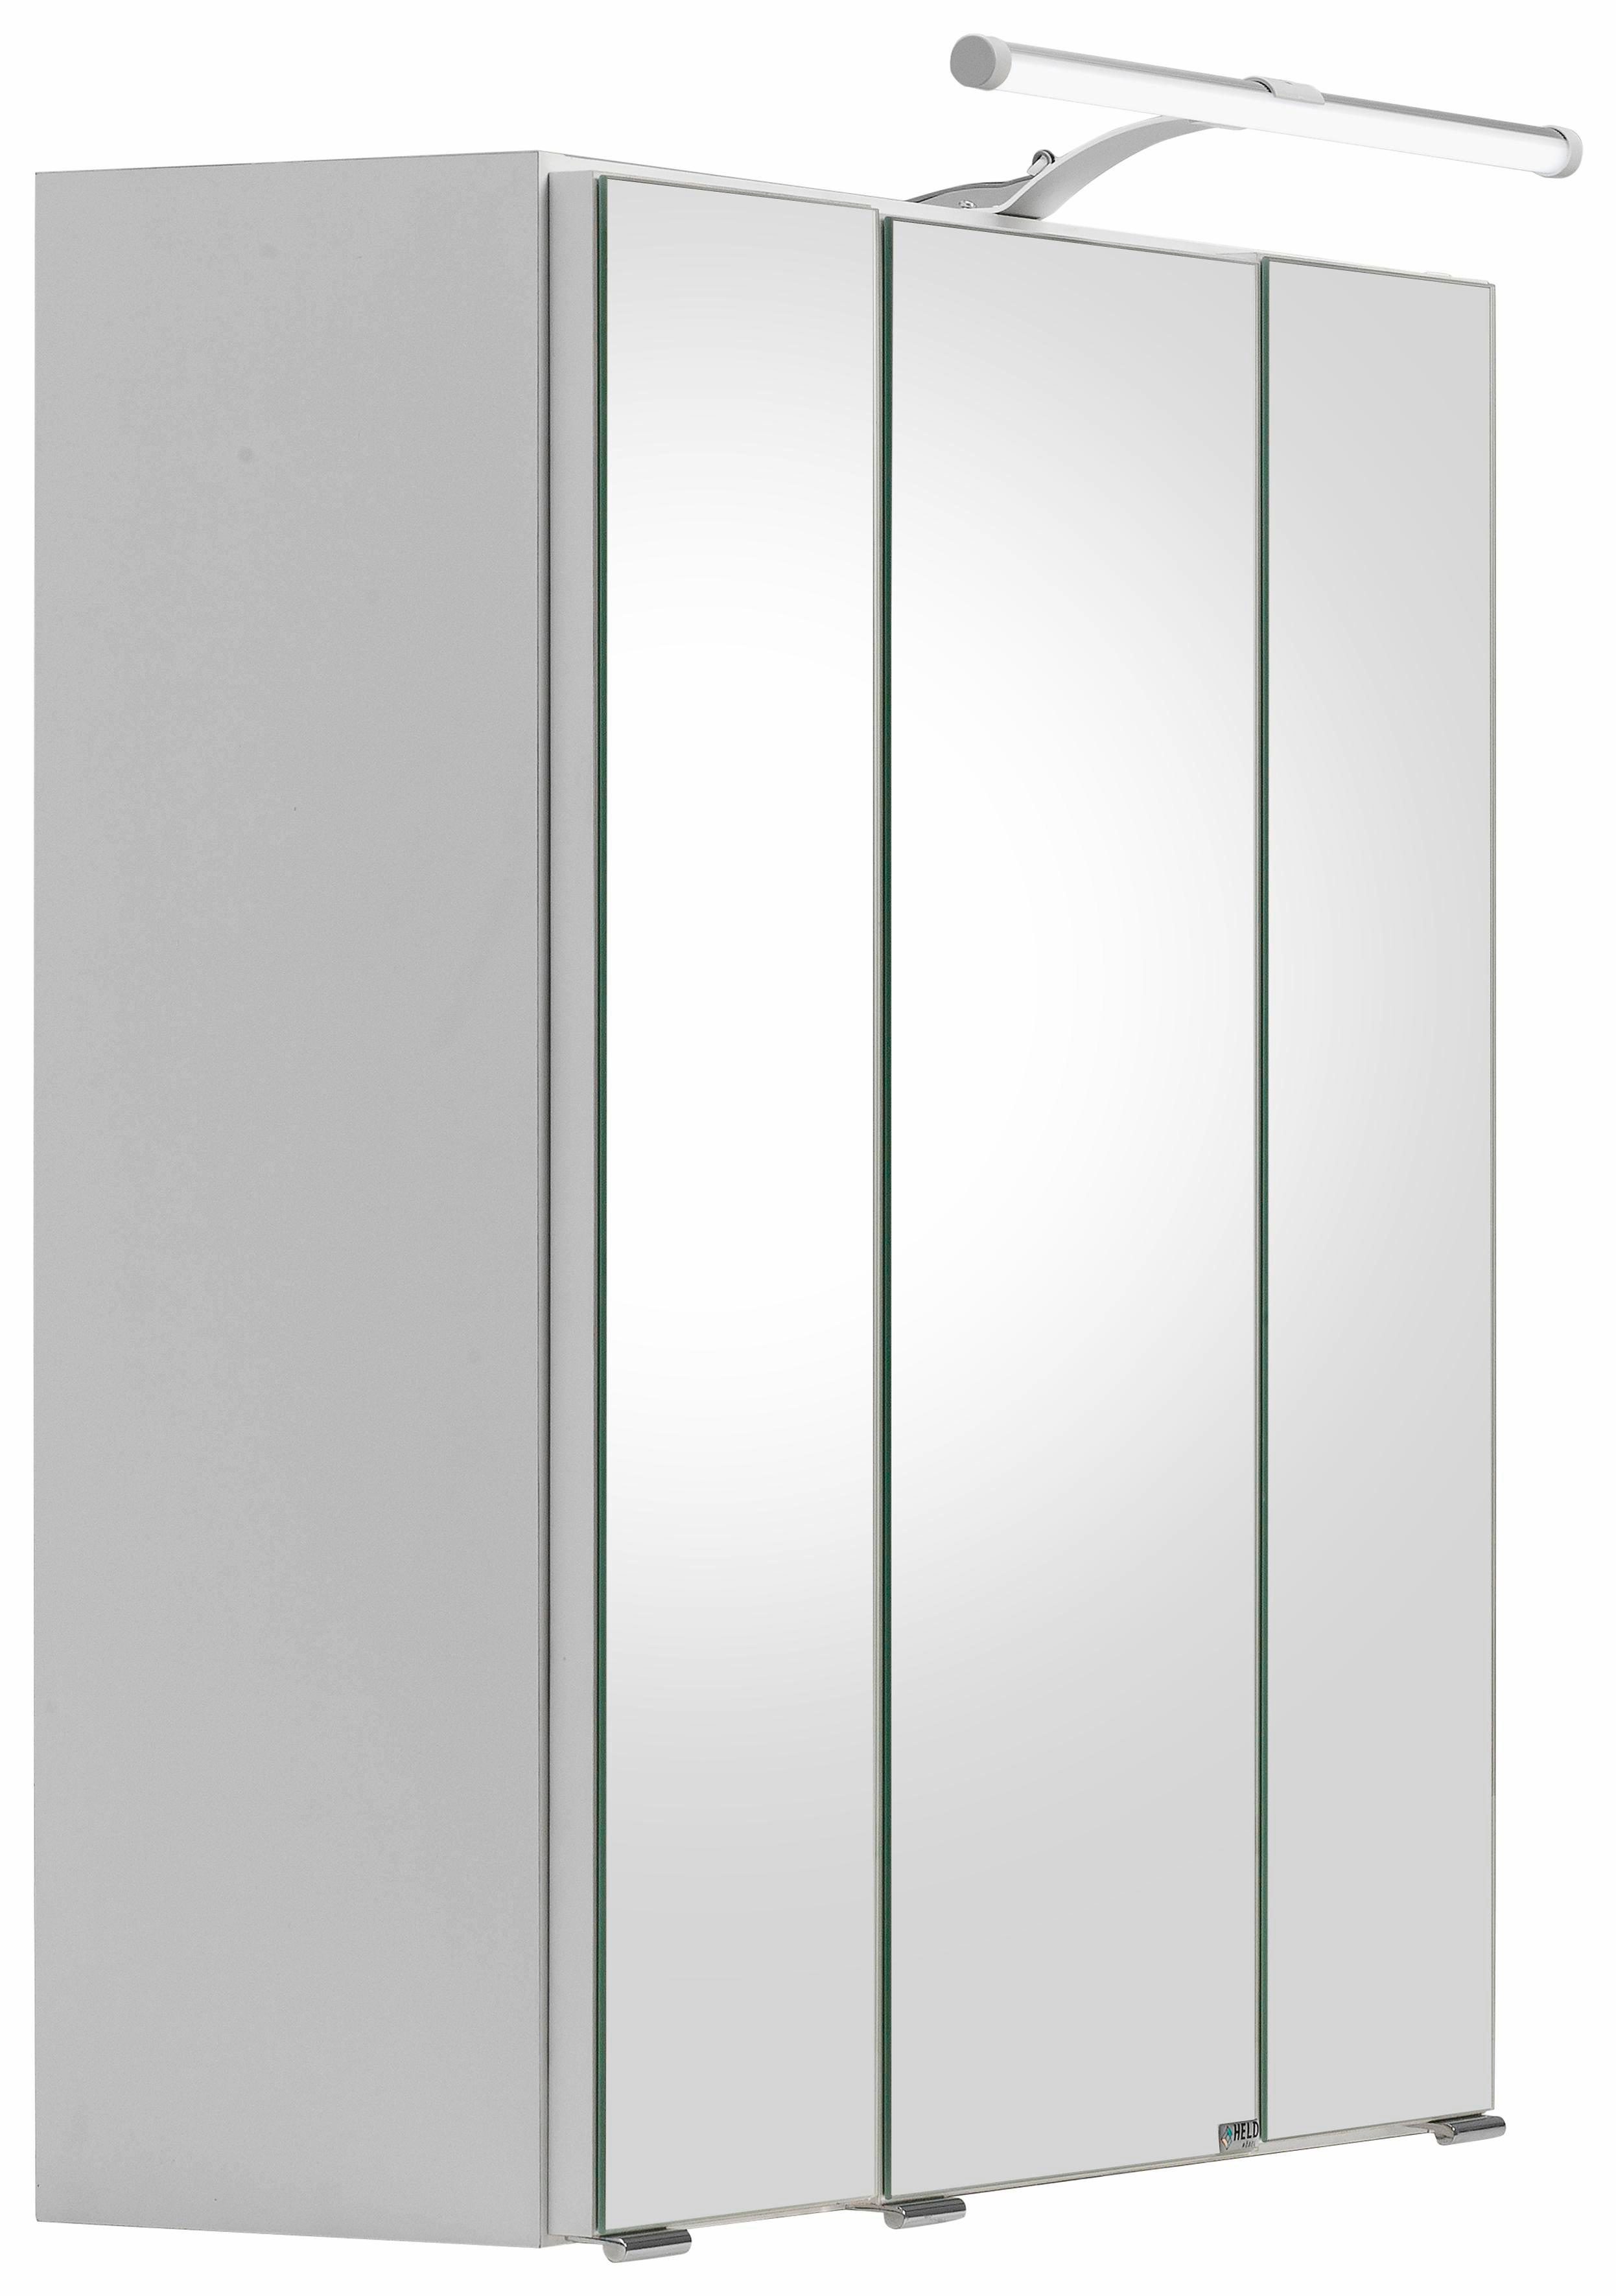 HELD MÖBEL Spiegelschrank Portofino mit LED-Beleuchtung, Pflegeleichte  Oberfläche | Waschbeckenunterschränke